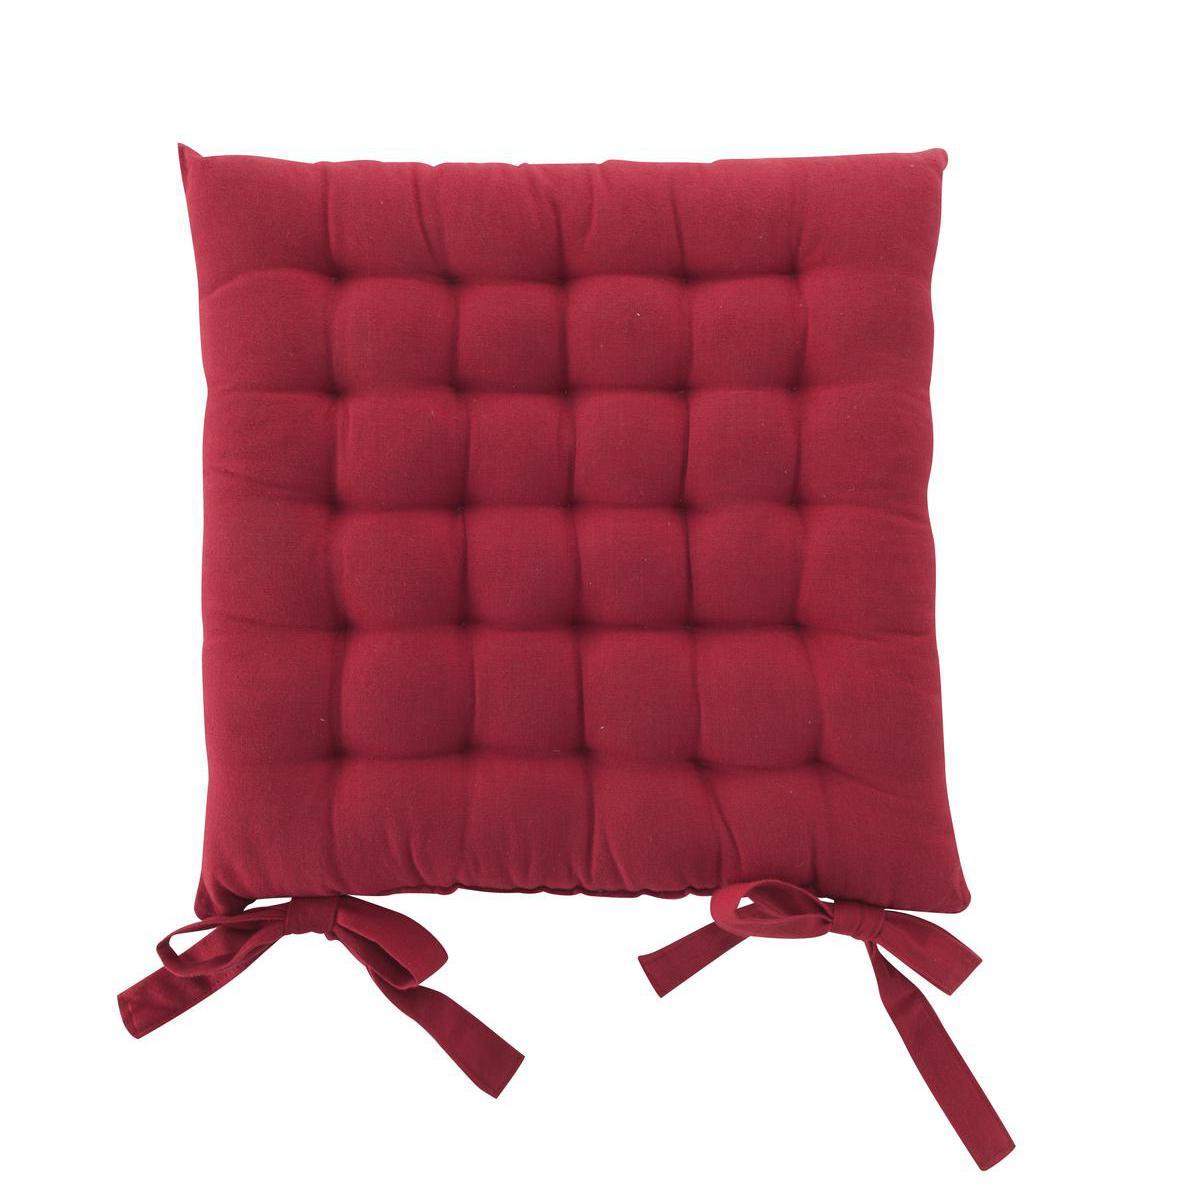 Galette de chaise capitonnée à nouettes - 100 % coton - 40 x 40 cm - Rouge